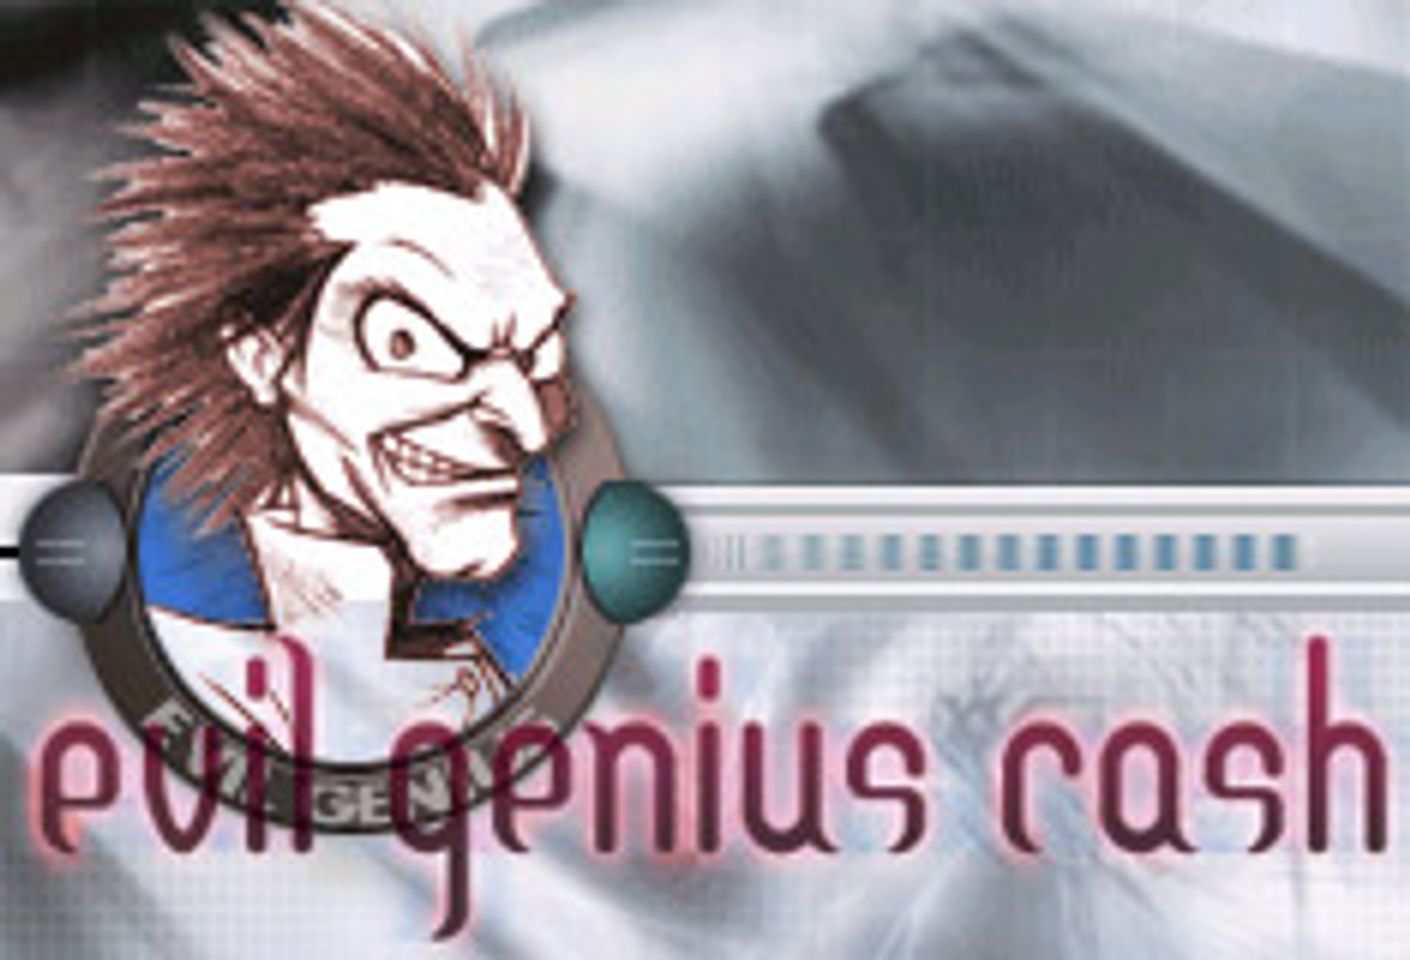 Evil Genius Cash Adds New Genius